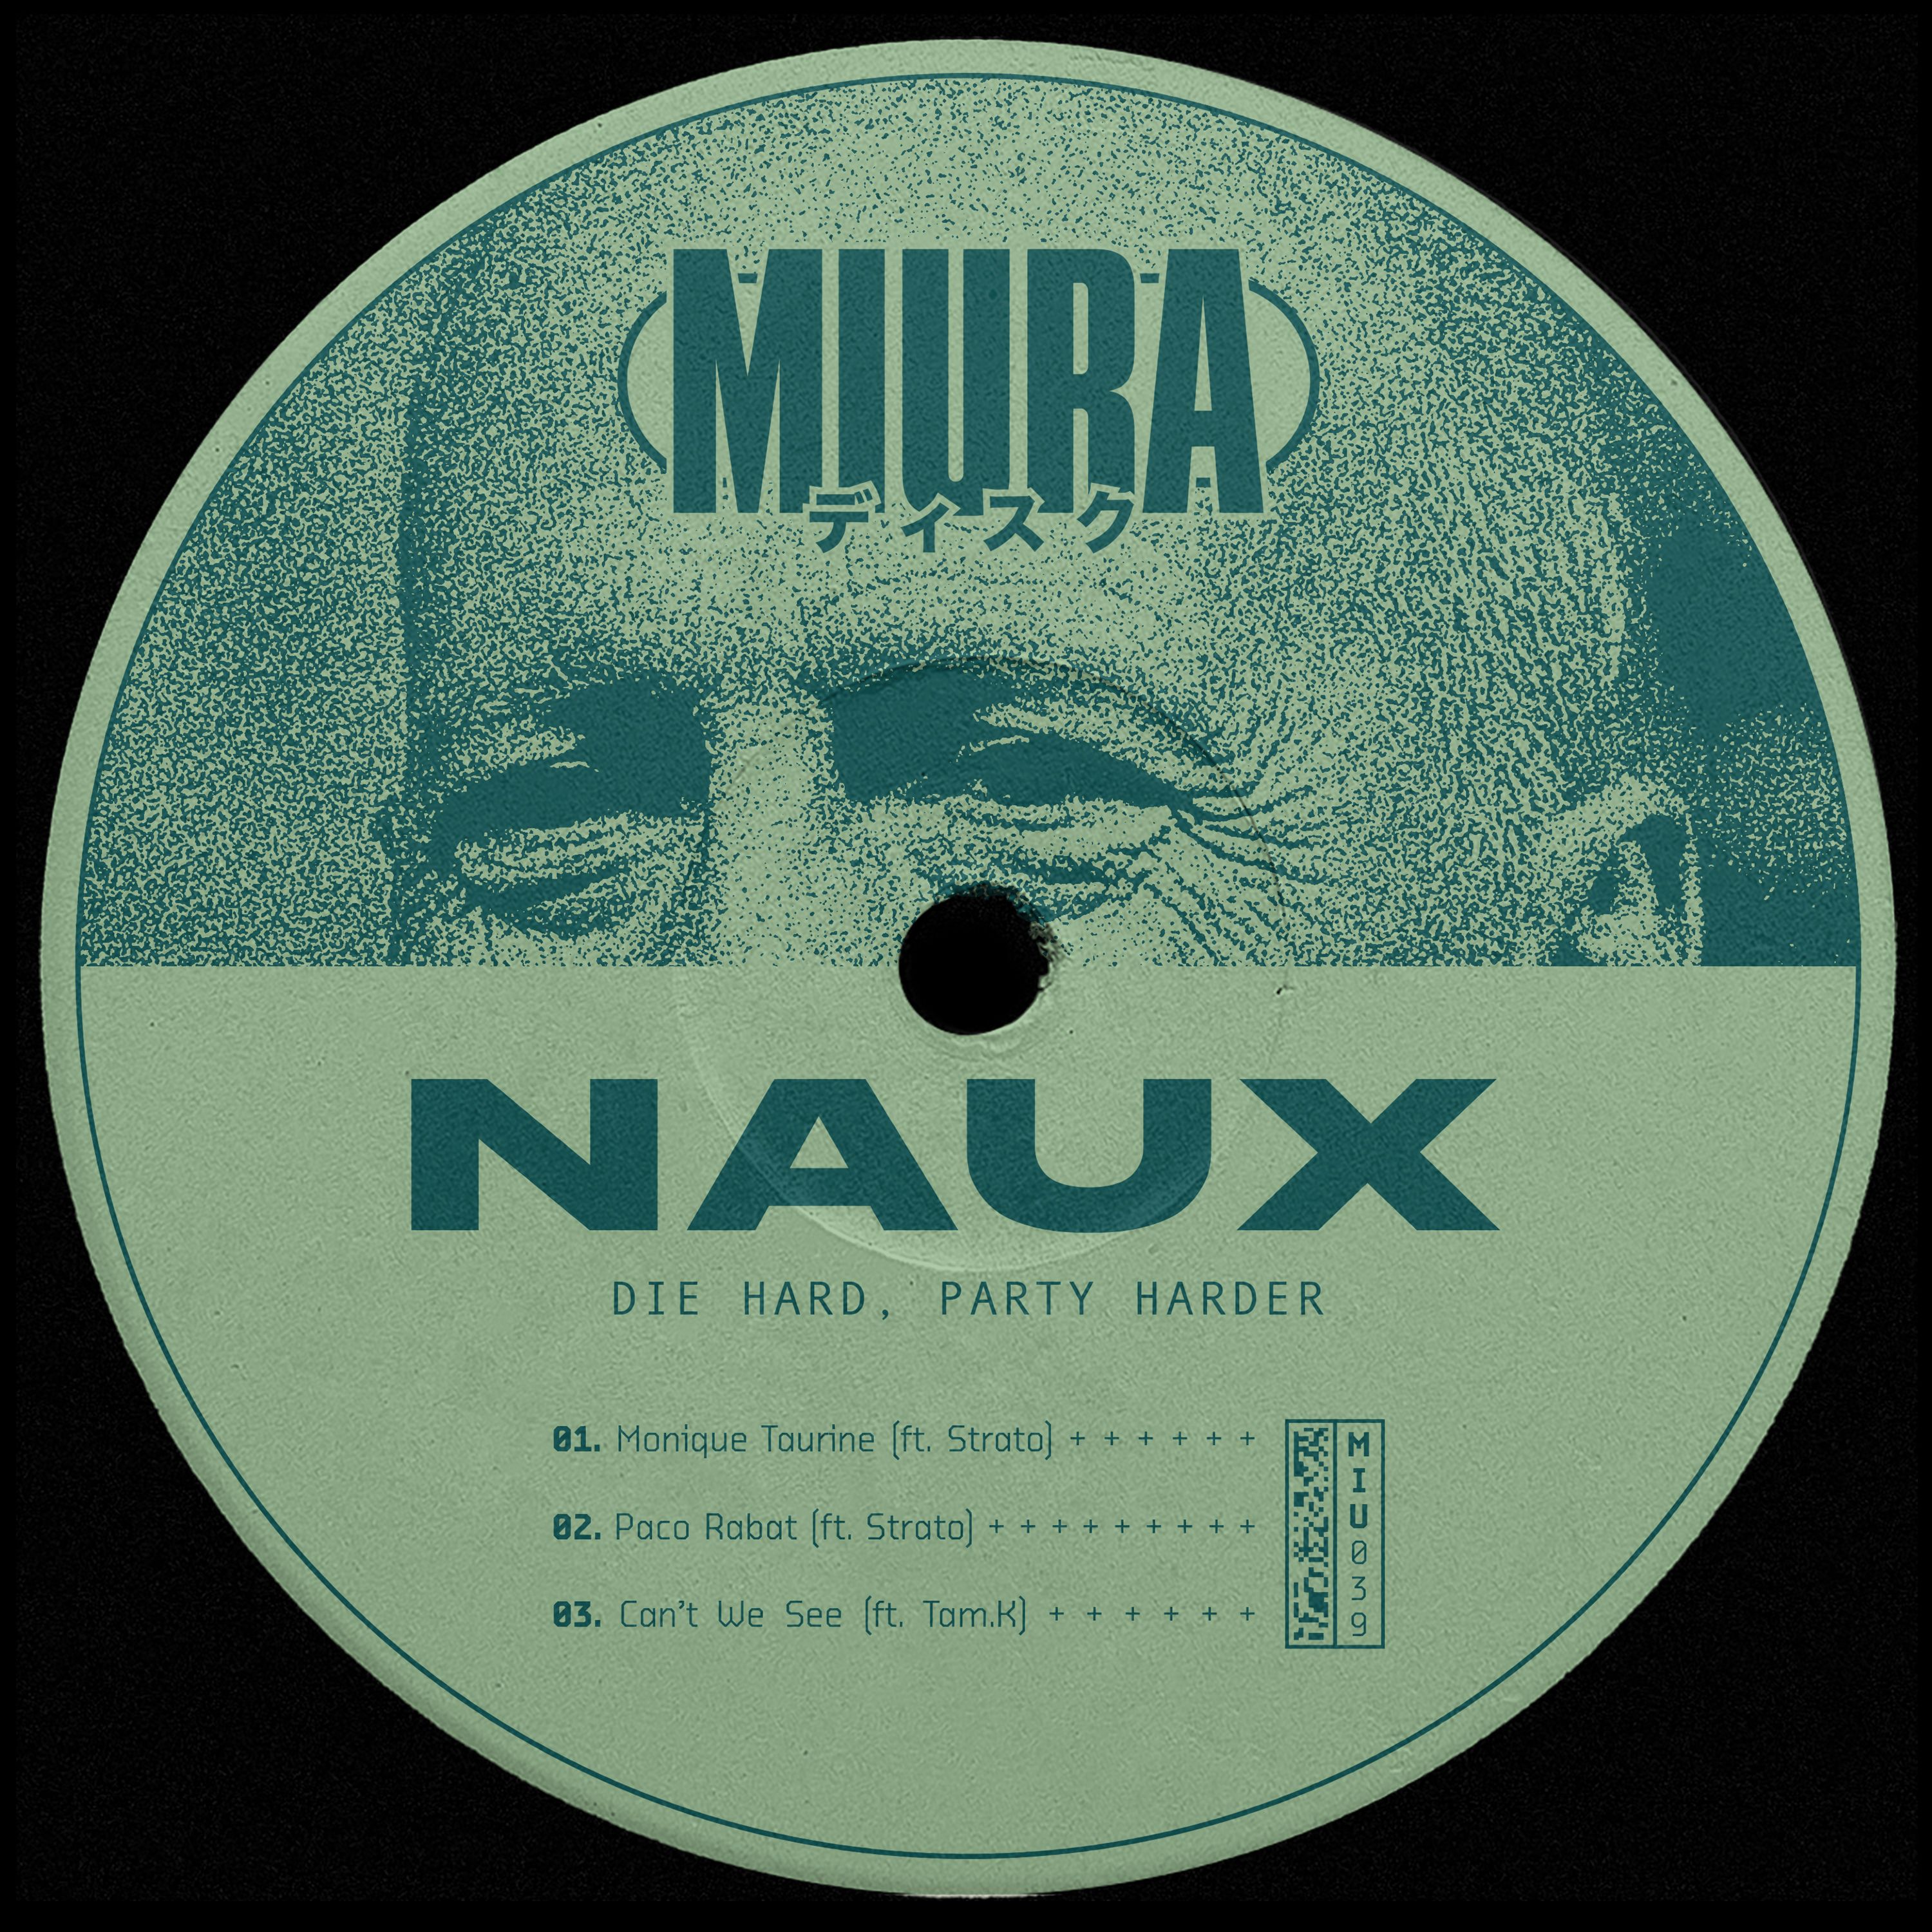 下载 PREMIERE: Naux & Strato - Monique Taurine [Miura Records]